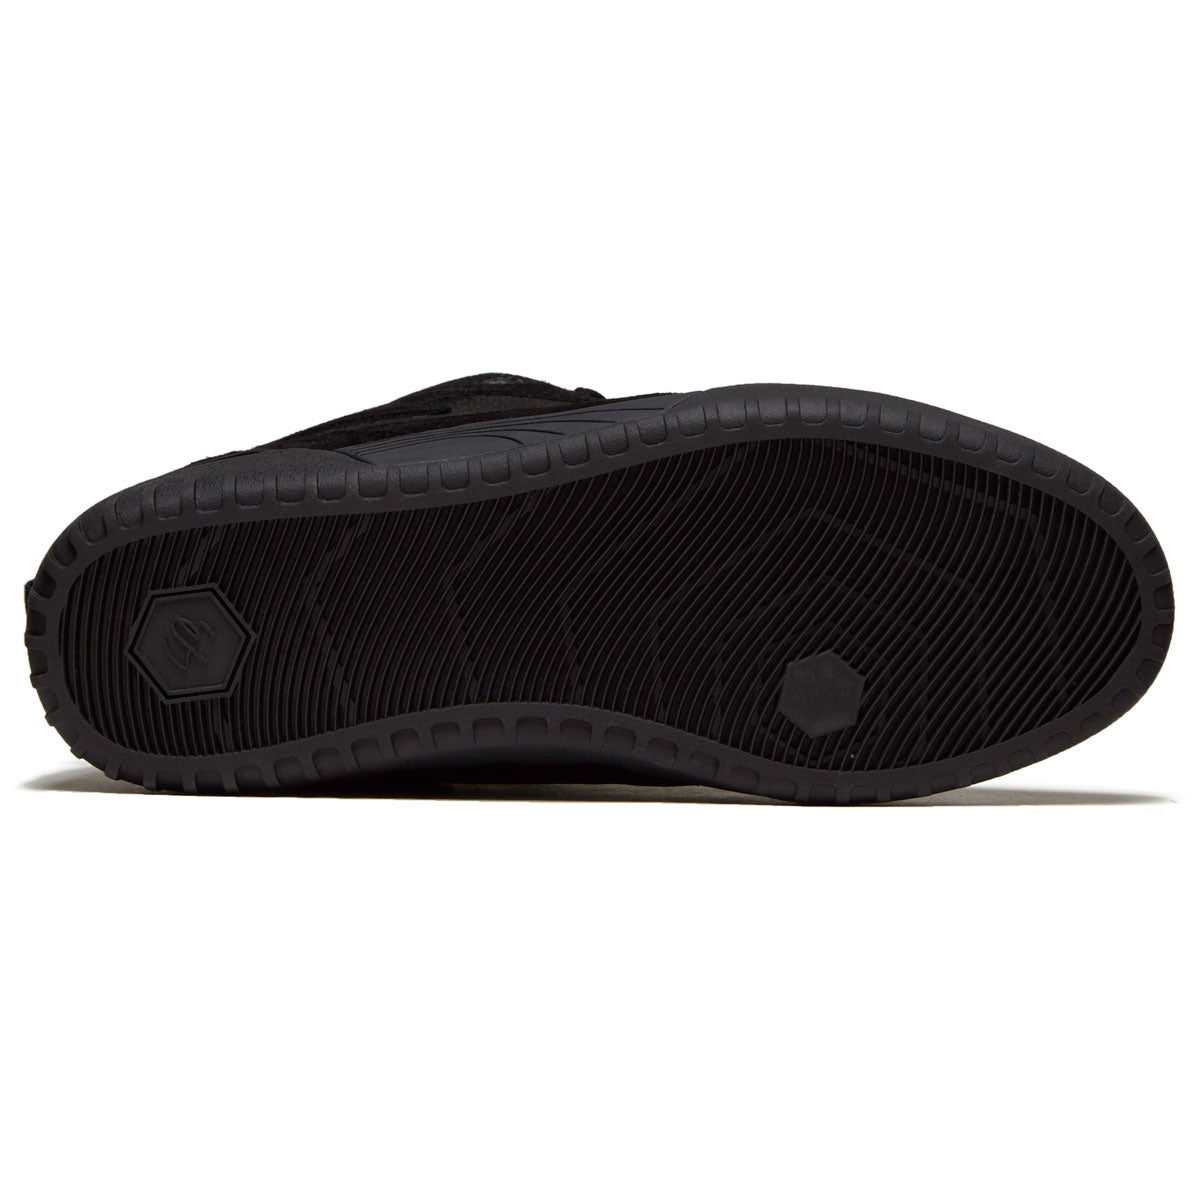 eS Quattro Shoes - Black/Black image 4